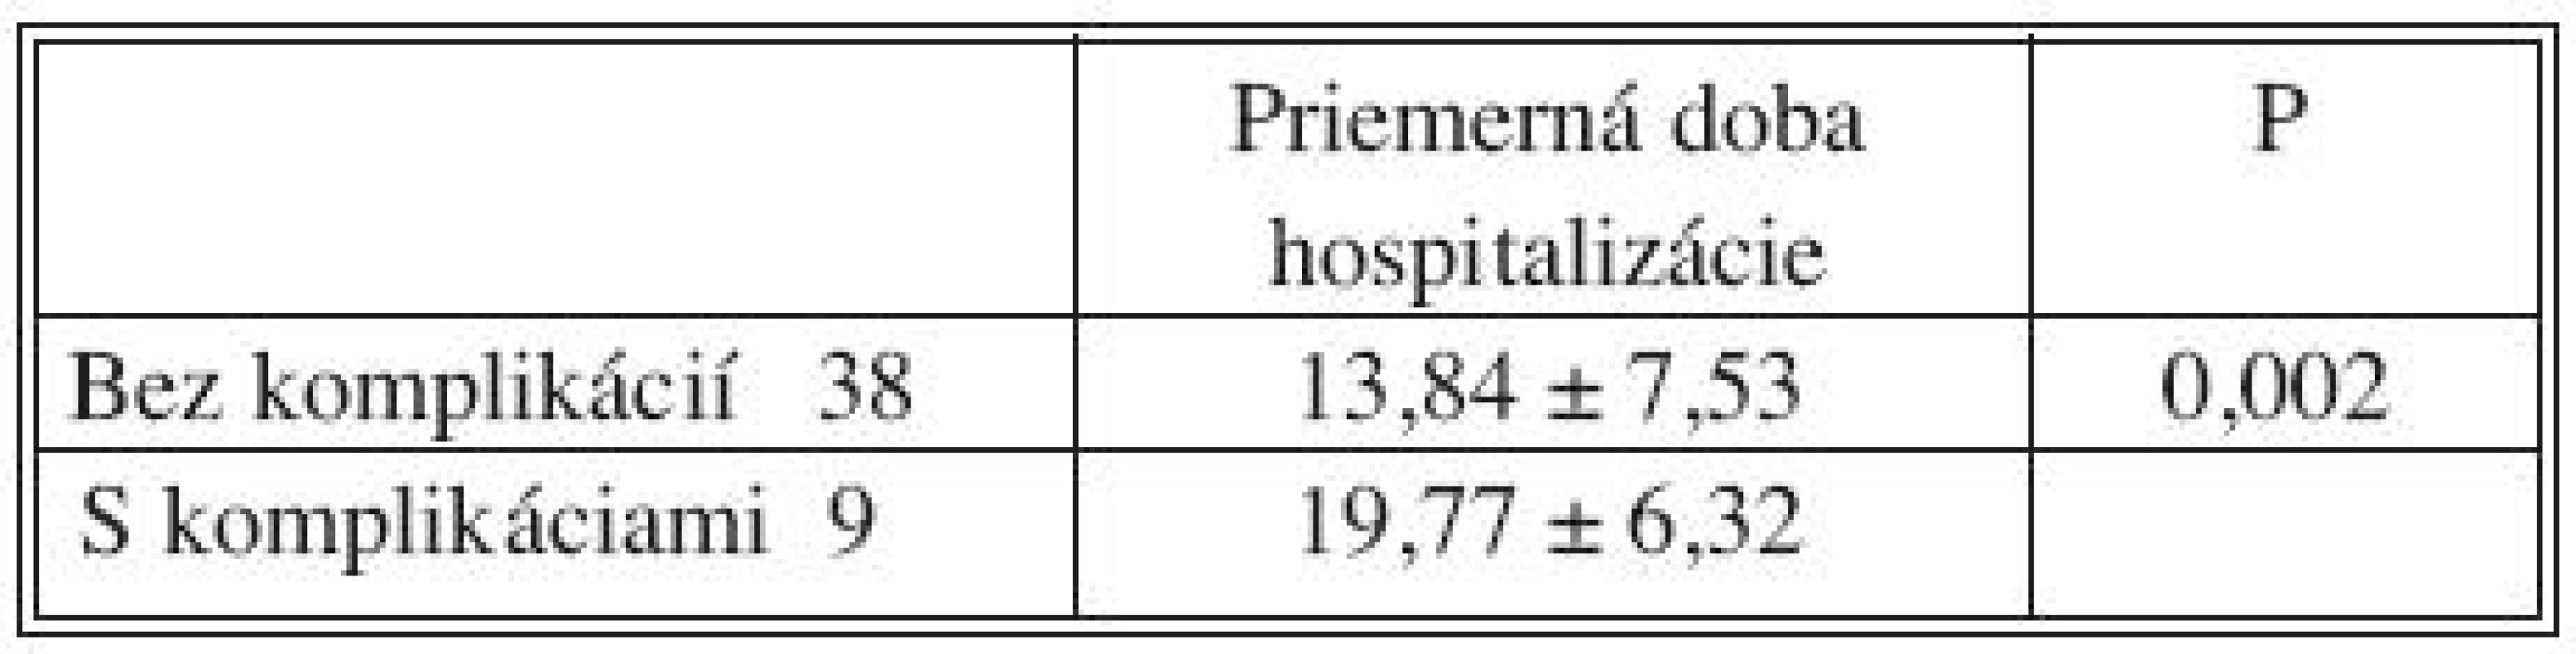 Vplyv pooperačných komplikácií na dobu hospitalizácie
Tab. 9. Influence of postoperative complications for length of hospitality stay